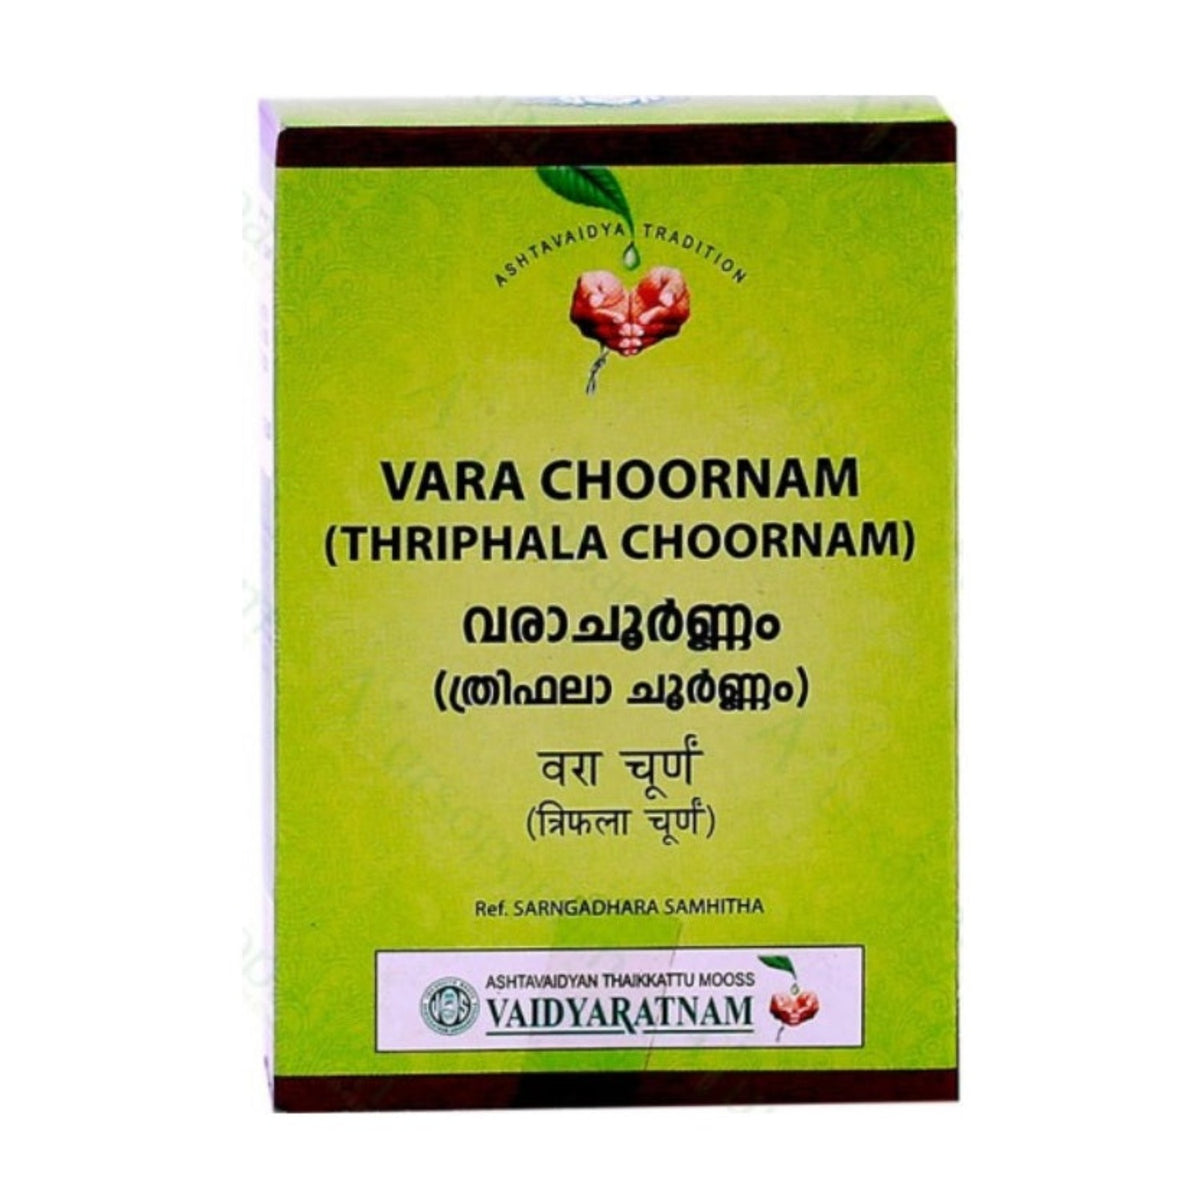 Vaidyaratnam Ayurvedic Vara Choornam Powder 50g